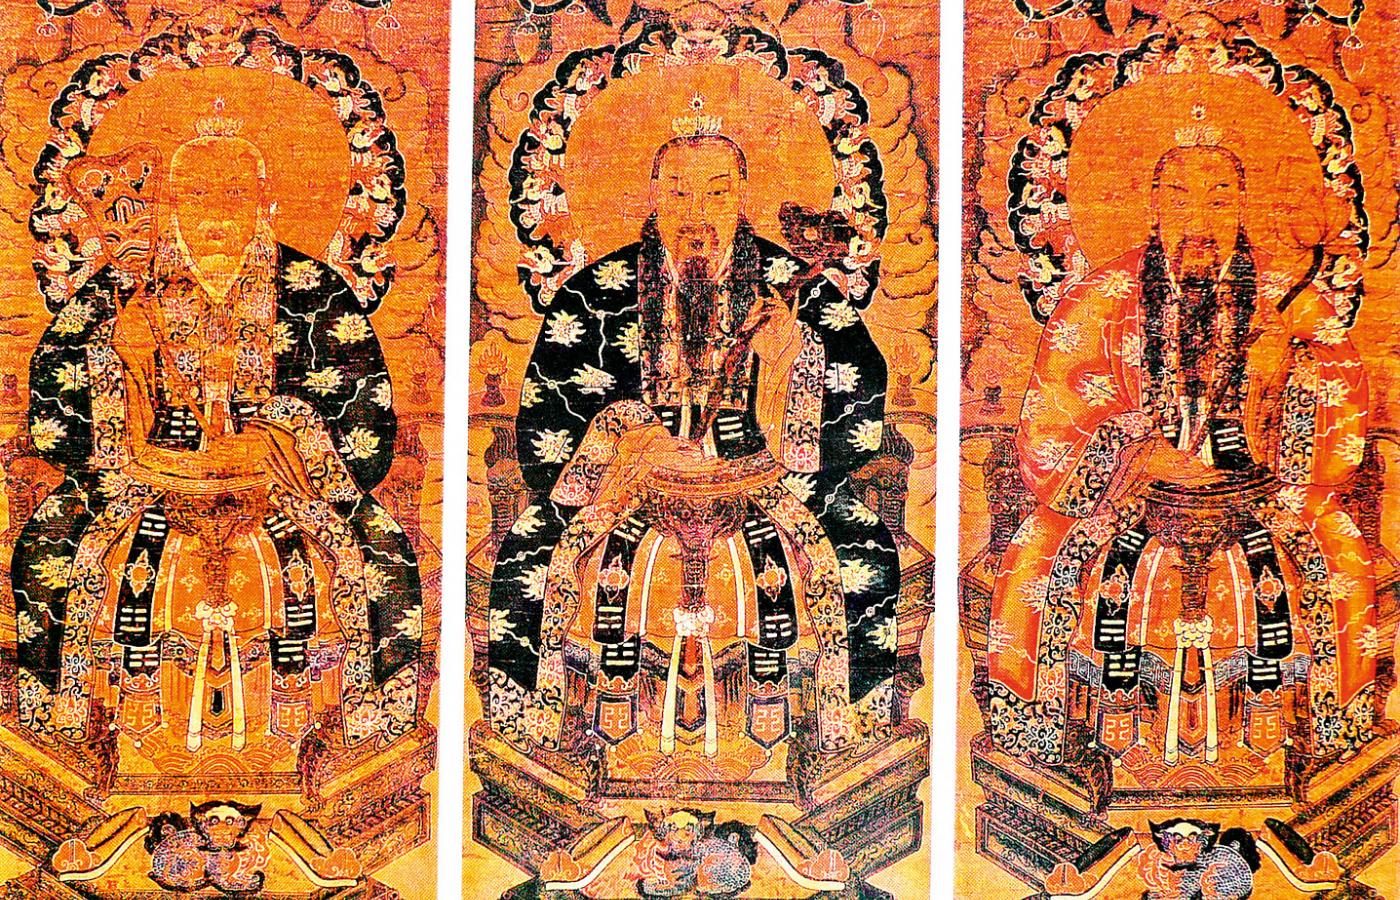 San qing, trójca czystych – trzy najwyższe bóstwa w panteonie taoistycznym związane przede wszystkim z tradycją Duchowego Klejnotu.